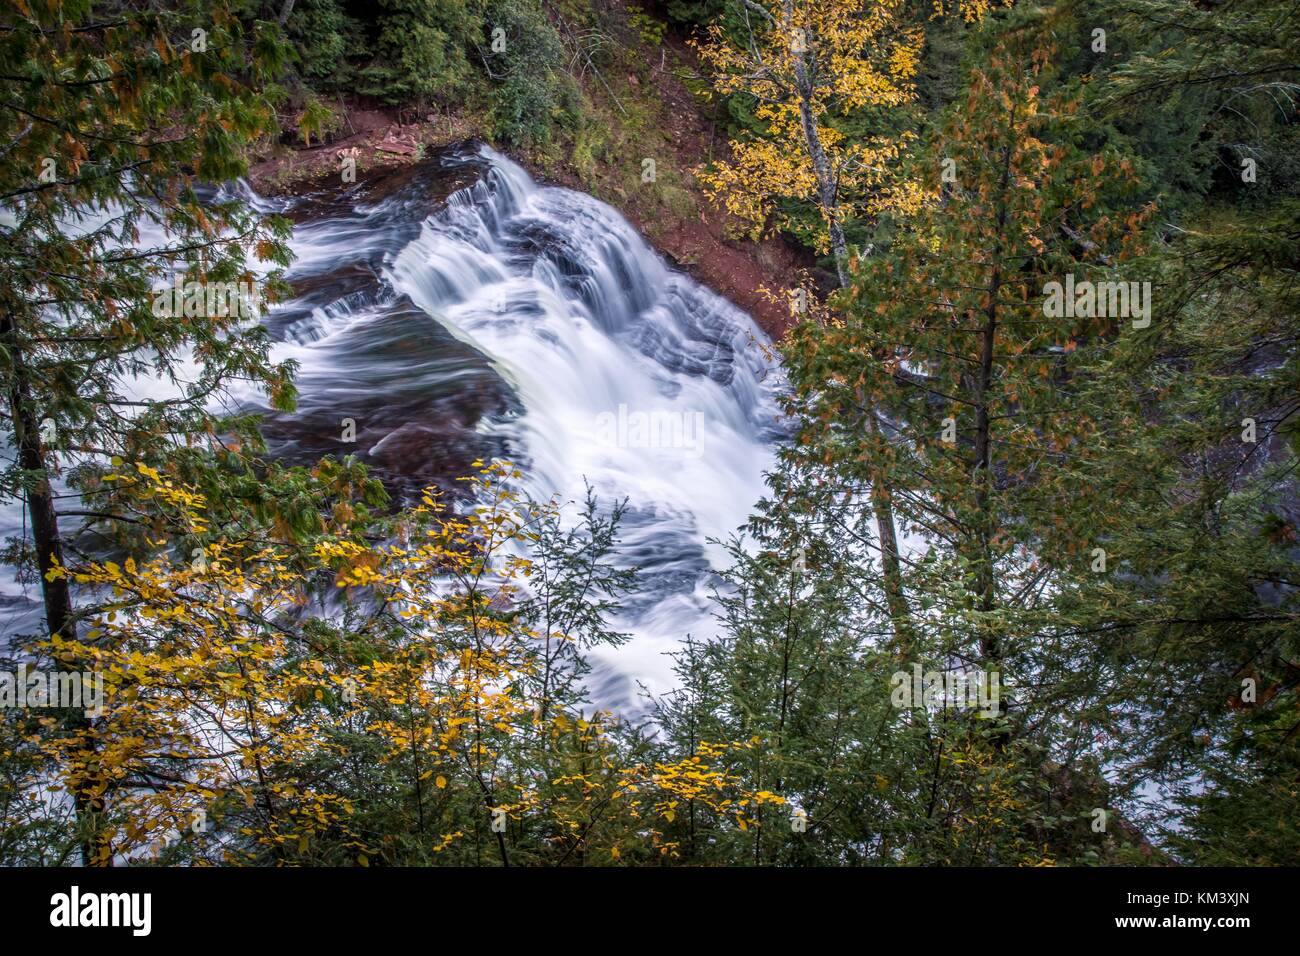 Cascade dans les bois. Belle Agate Falls Scenic Site dans la Péninsule Supérieure du Michigan. La partie supérieure de la péninsule est réputé pour ses couleurs d'automne. Banque D'Images